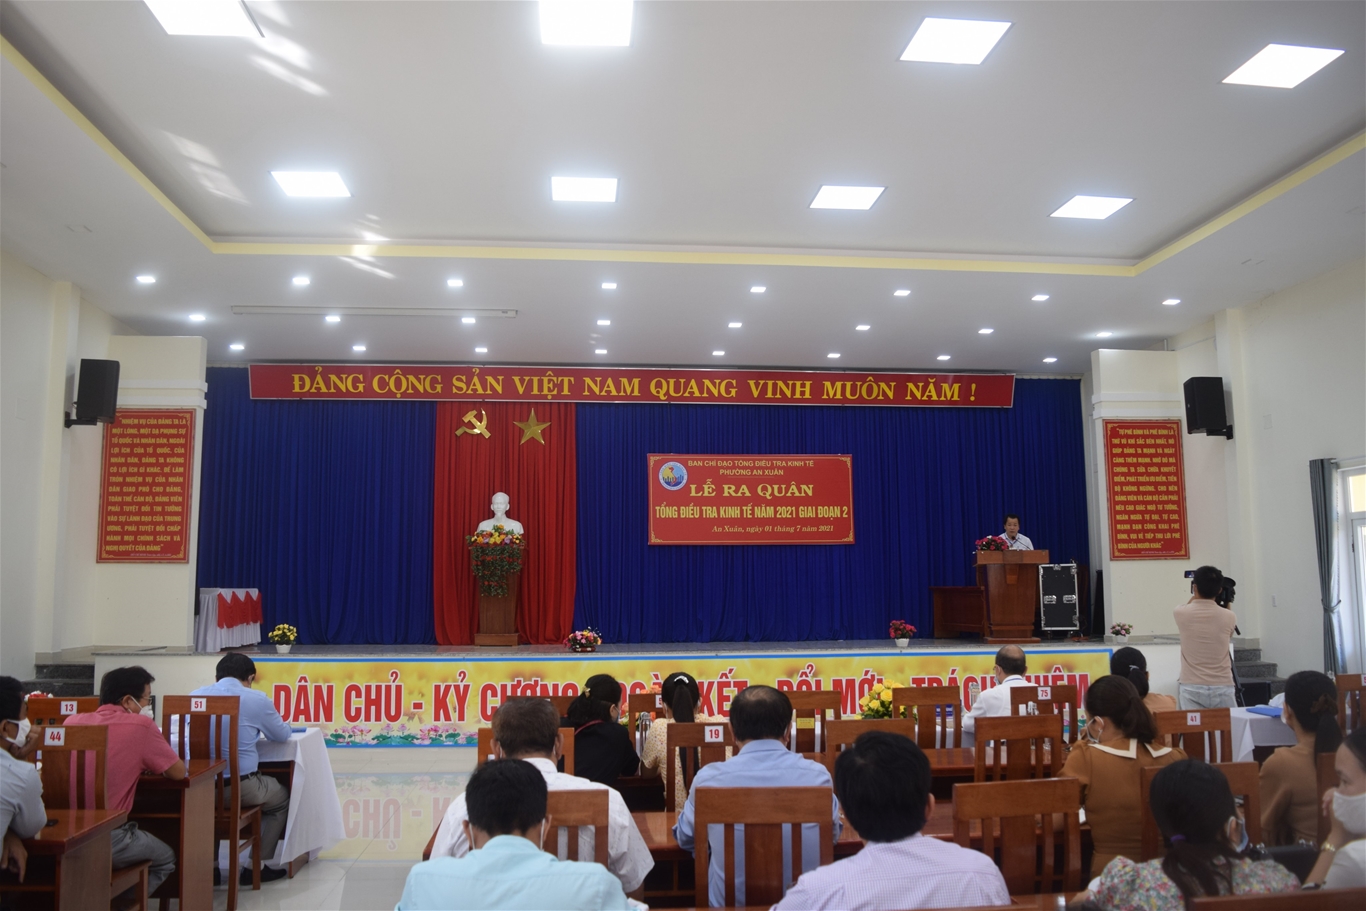 Tổng điều tra kinh tế năm 2021 tại Quảng Nam – Một số kết quả bước đầu